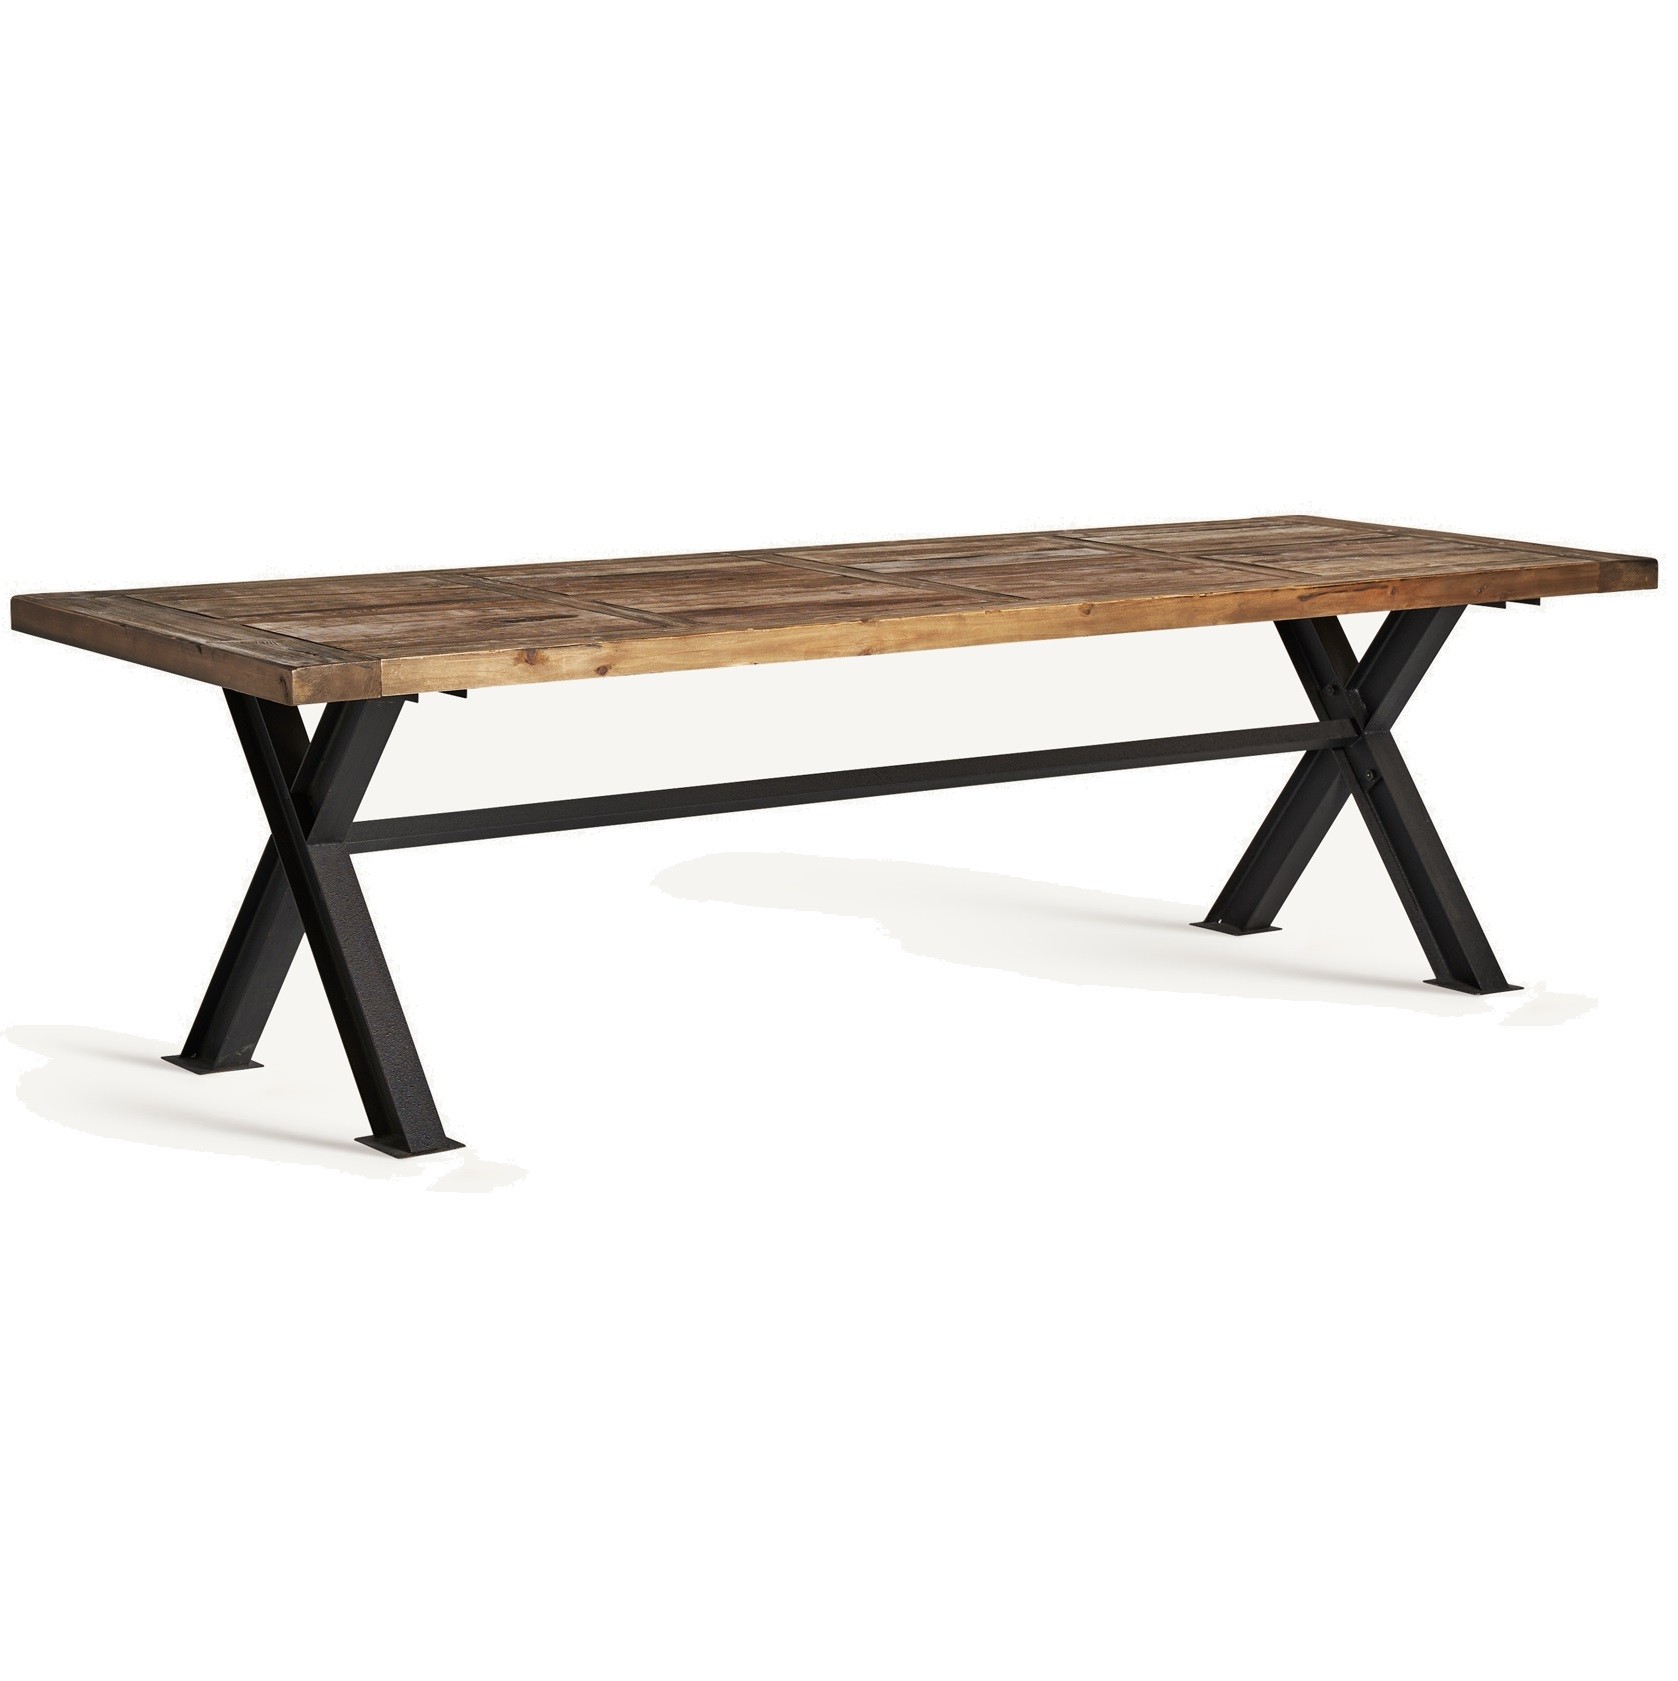 Estila Luxusní obdélníkový industriální jídelní stůl Inar s dřevěnou deskou v přírodní hnědé barvě s tabulovým designem 280 cm